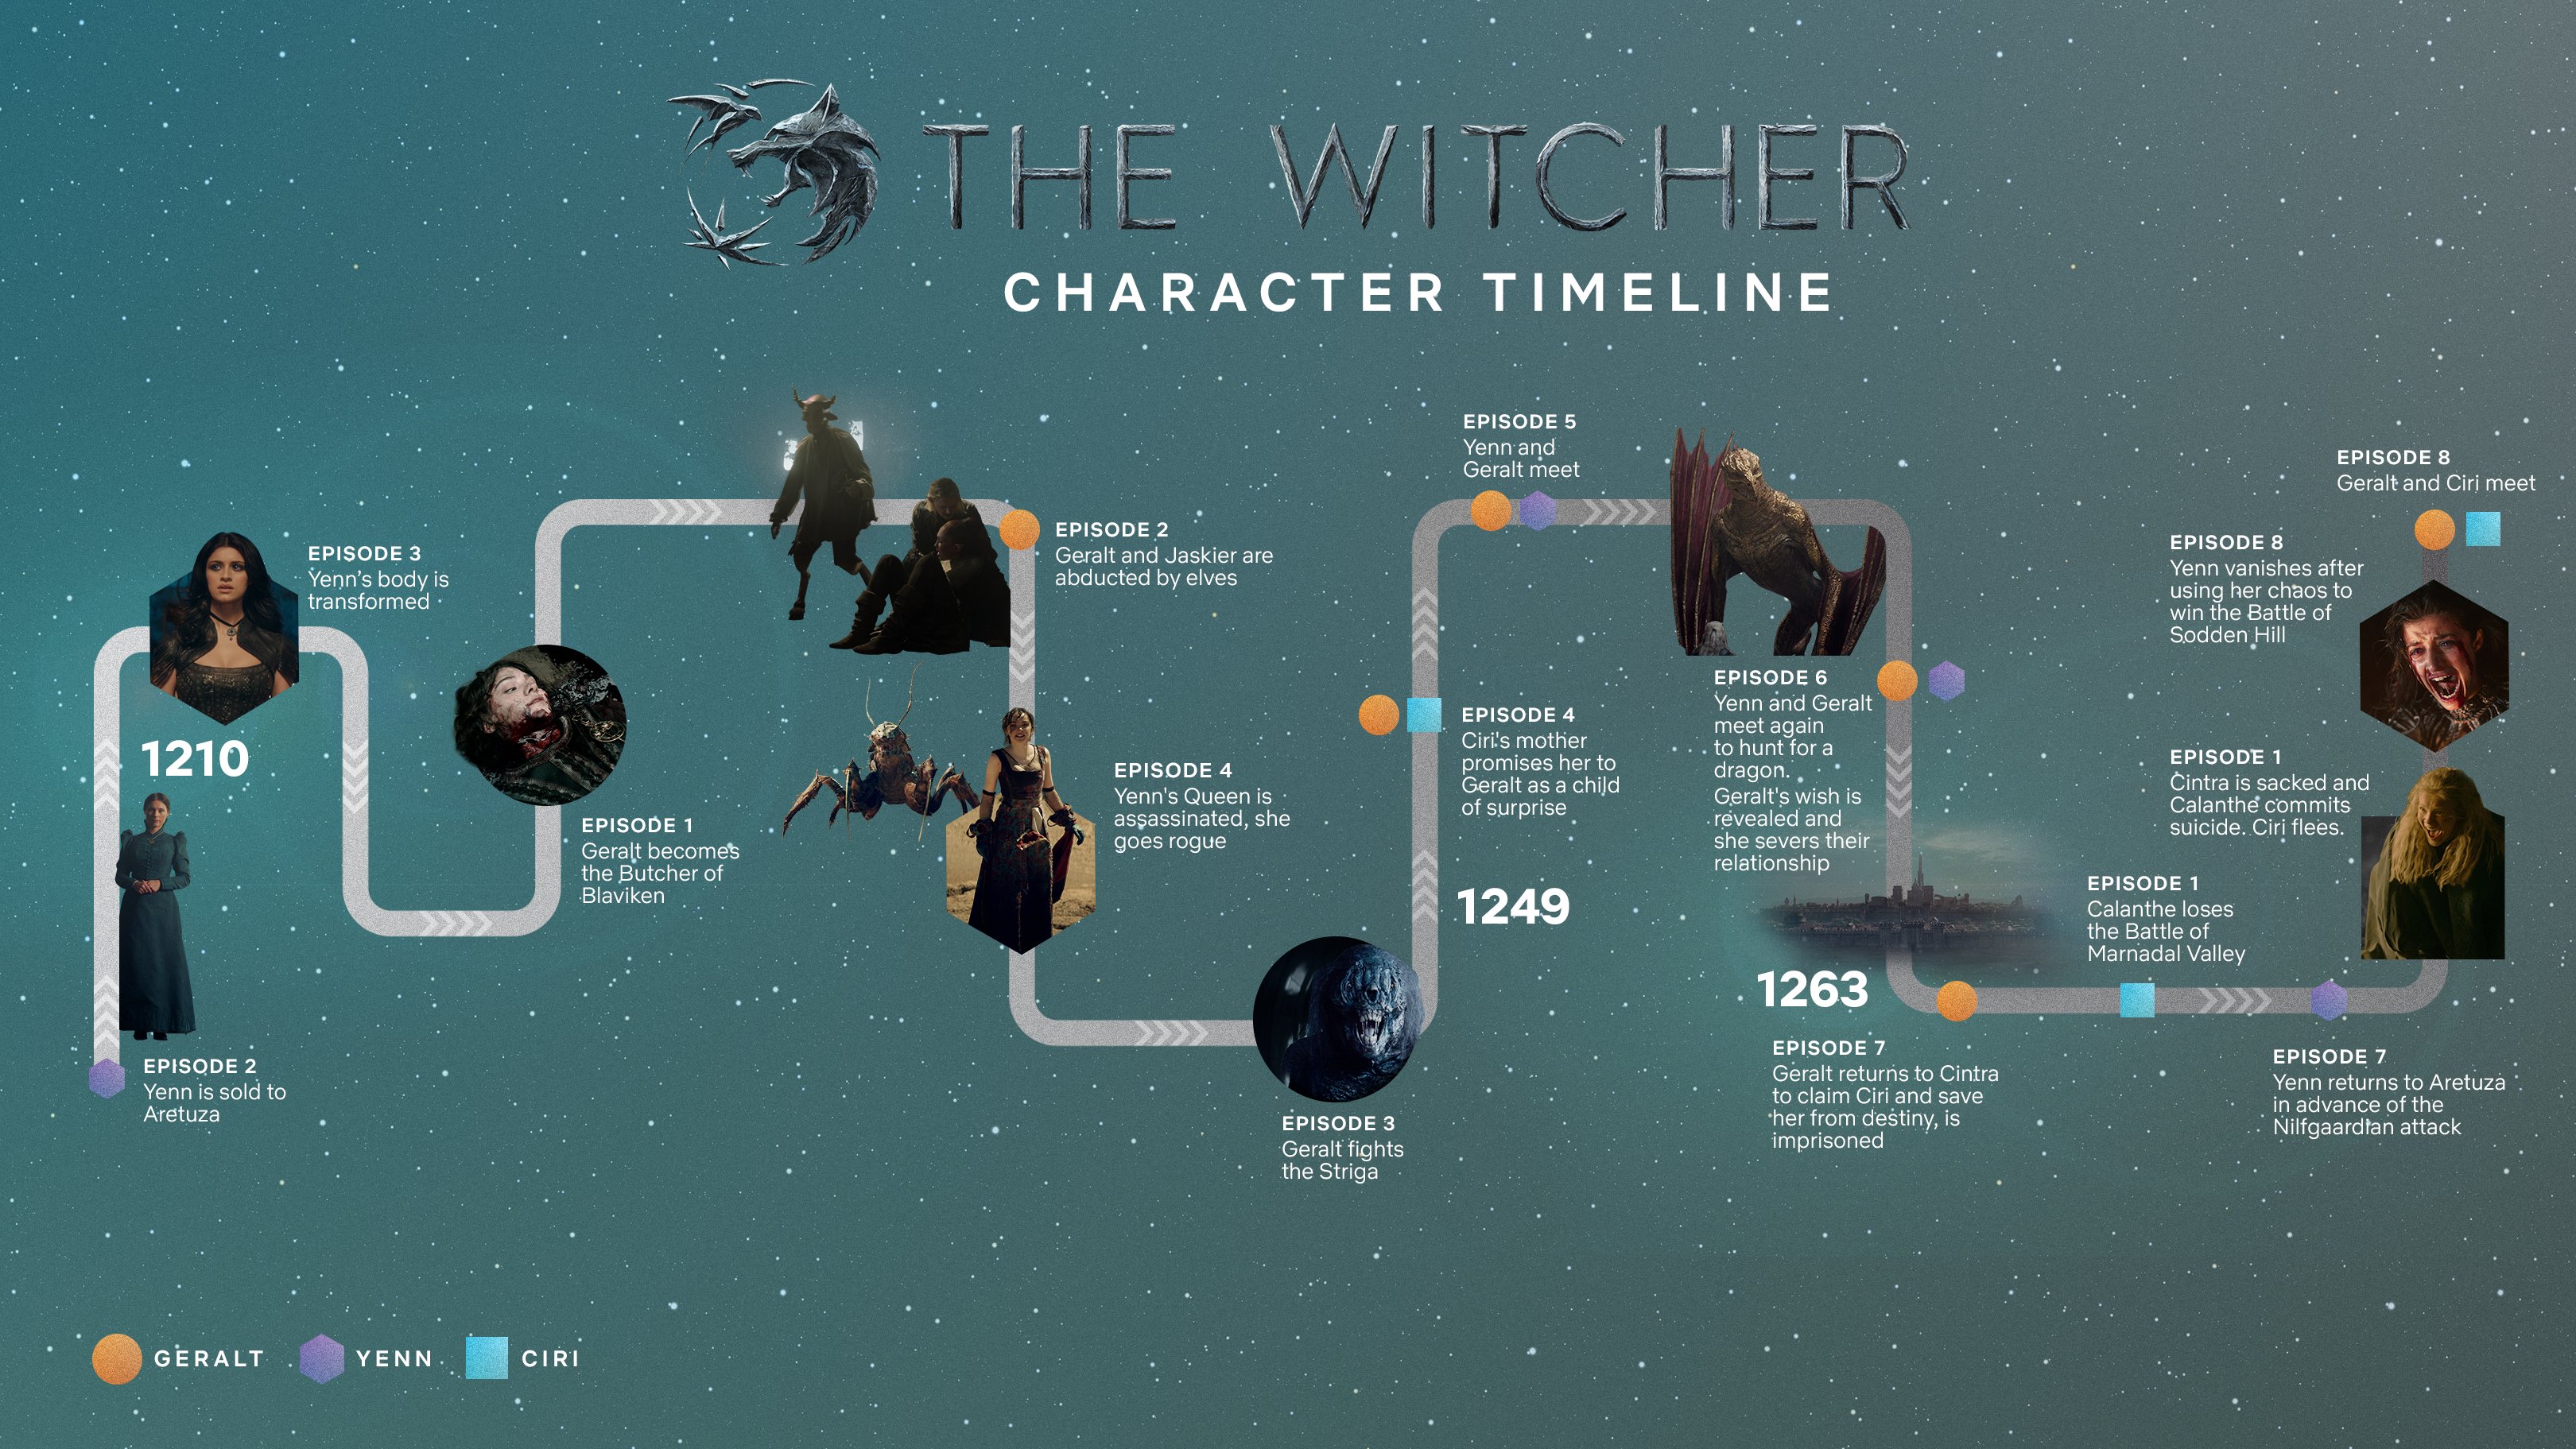 3つの時間軸を平行して描いたドラマ ウィッチャー シーズン1の分かりやすい年表が公開 地図と連動した本格的なインタラクティブ年表も Doope